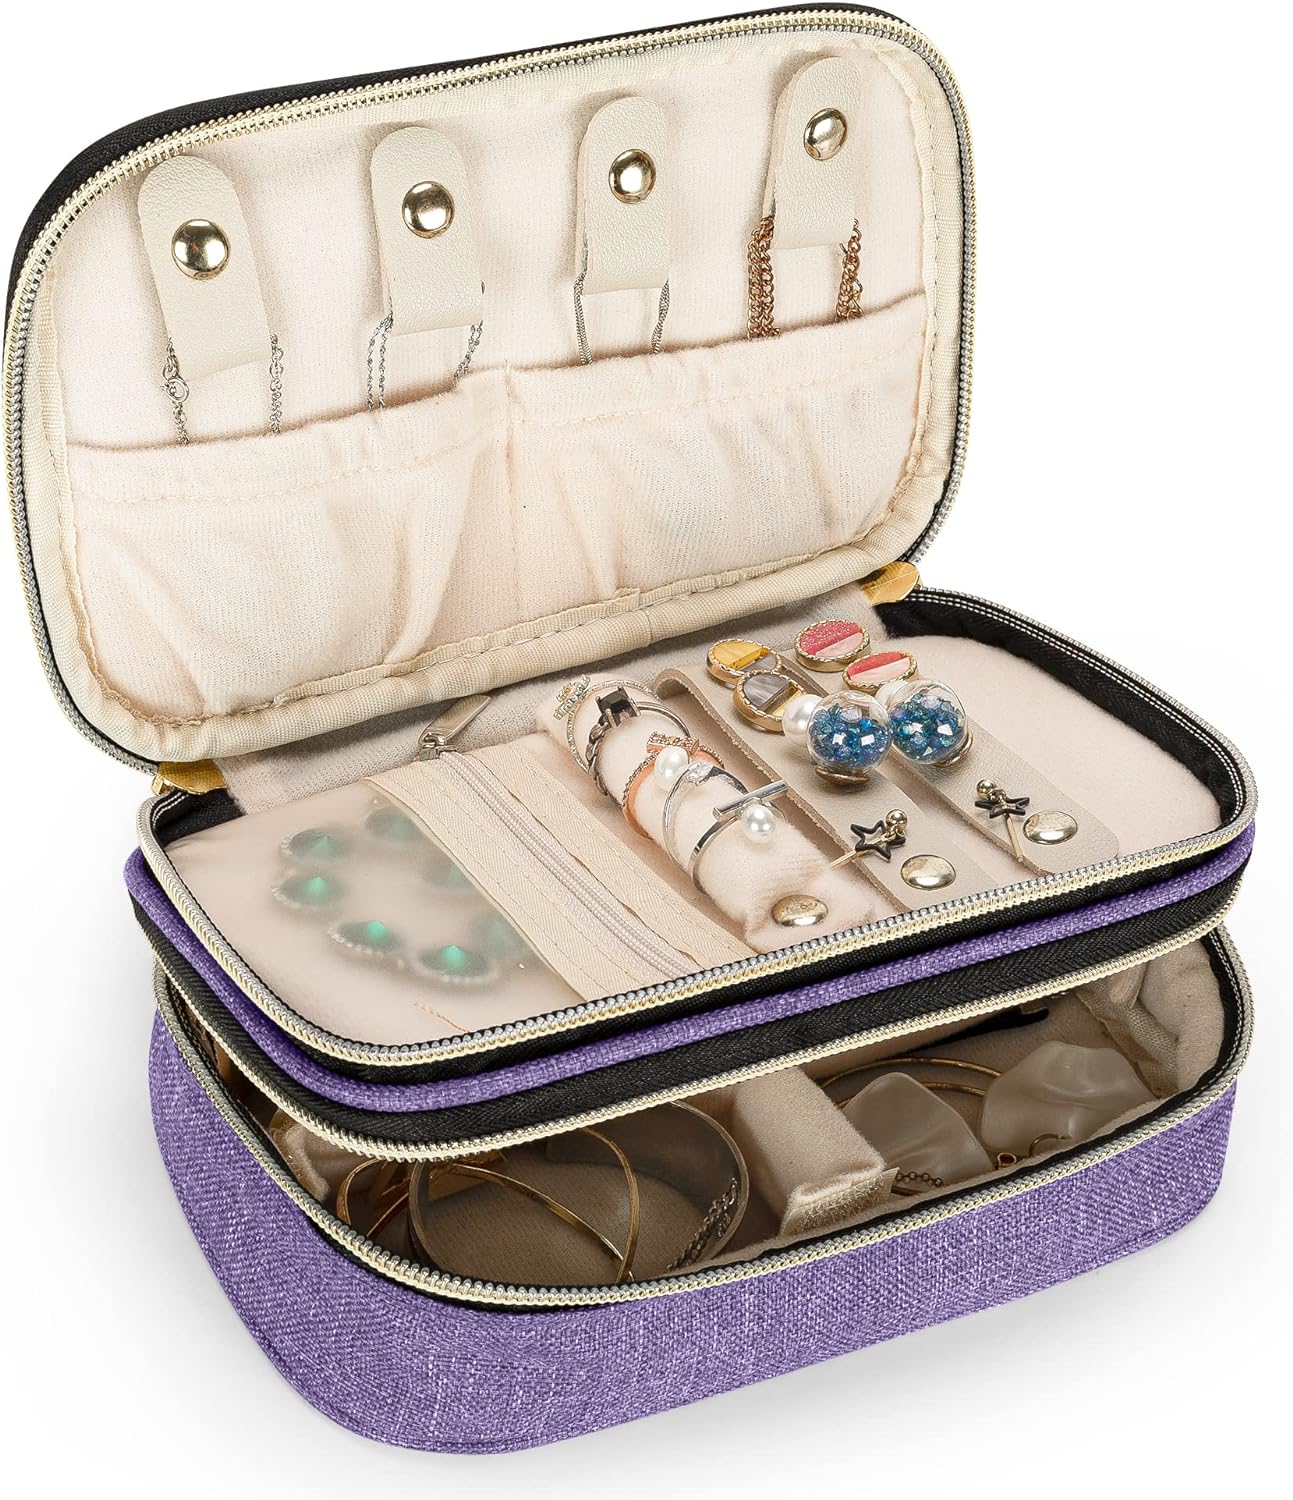 LUXJA Double-layer Jewelry Case, Travel Jewelry Organizer, Purple (Small)